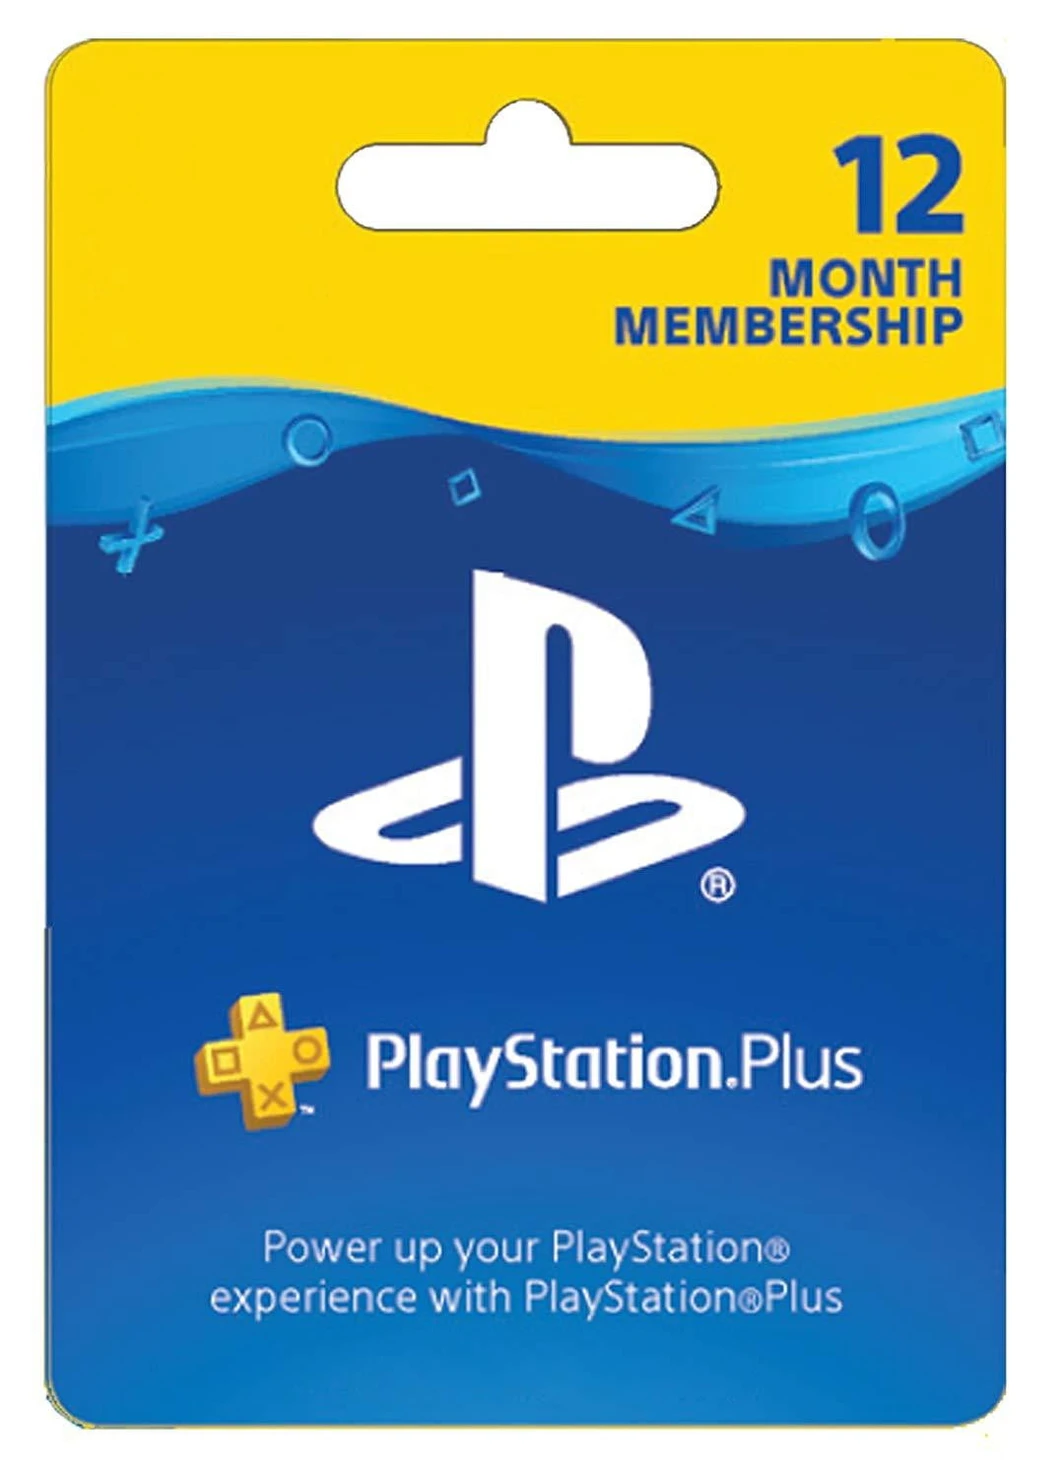 consolas y videojuegos - Códigos originales Playstation Plus de 1 año y de 3 meses. En oferta.